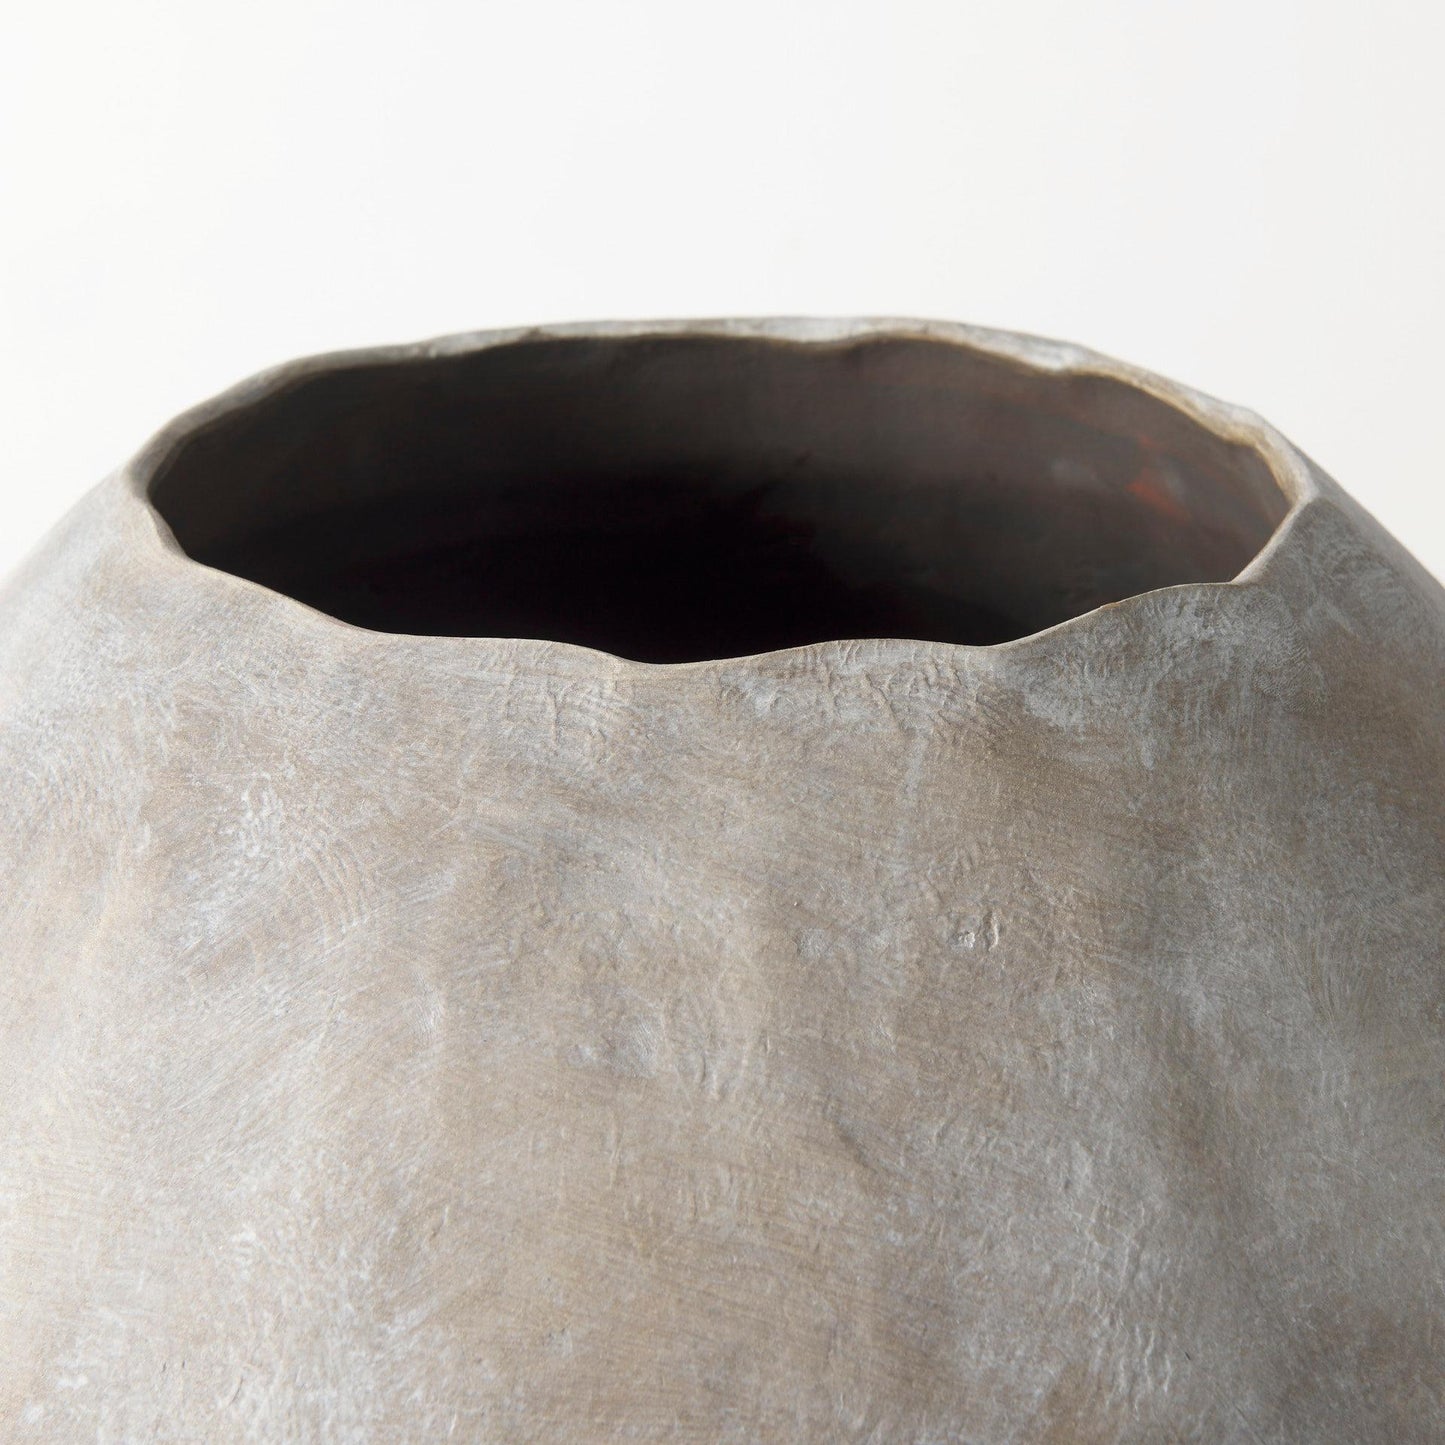 Gobi 23L x 28H Large Tan Ceramic Oval Vase